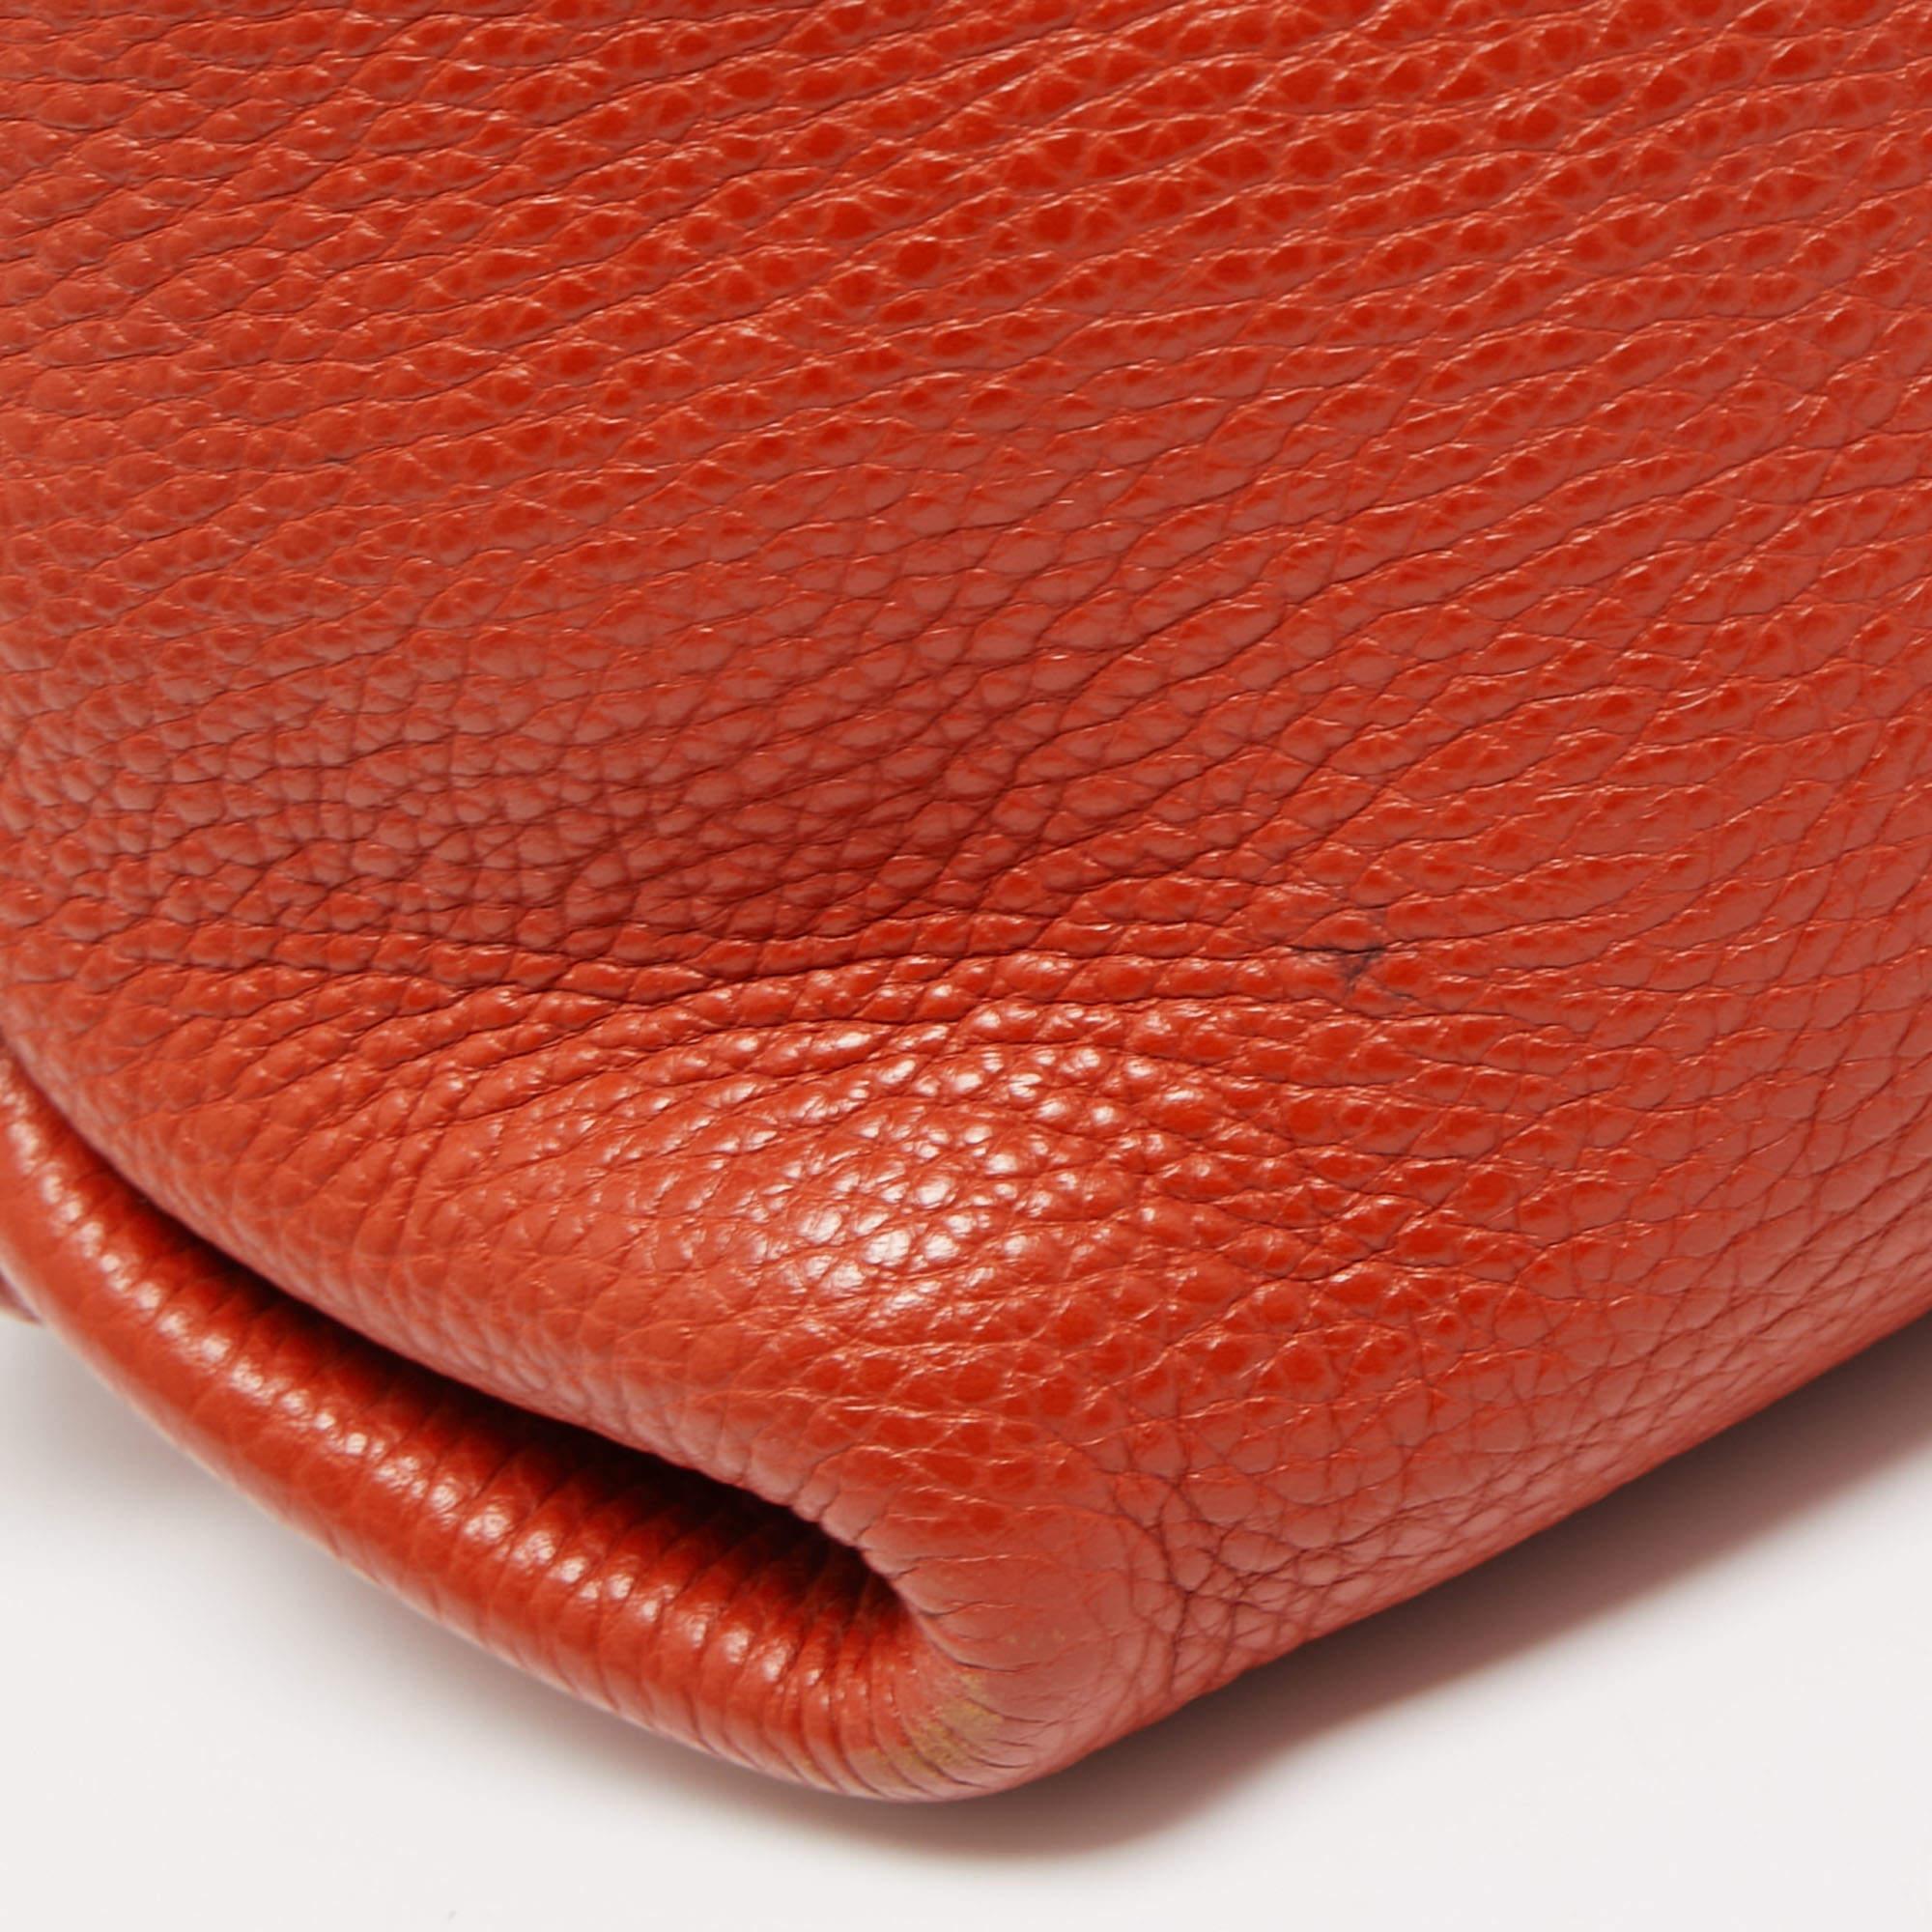 Salvatore Ferragamo Orange Leather Medium Sofia Top Handle Bag 5